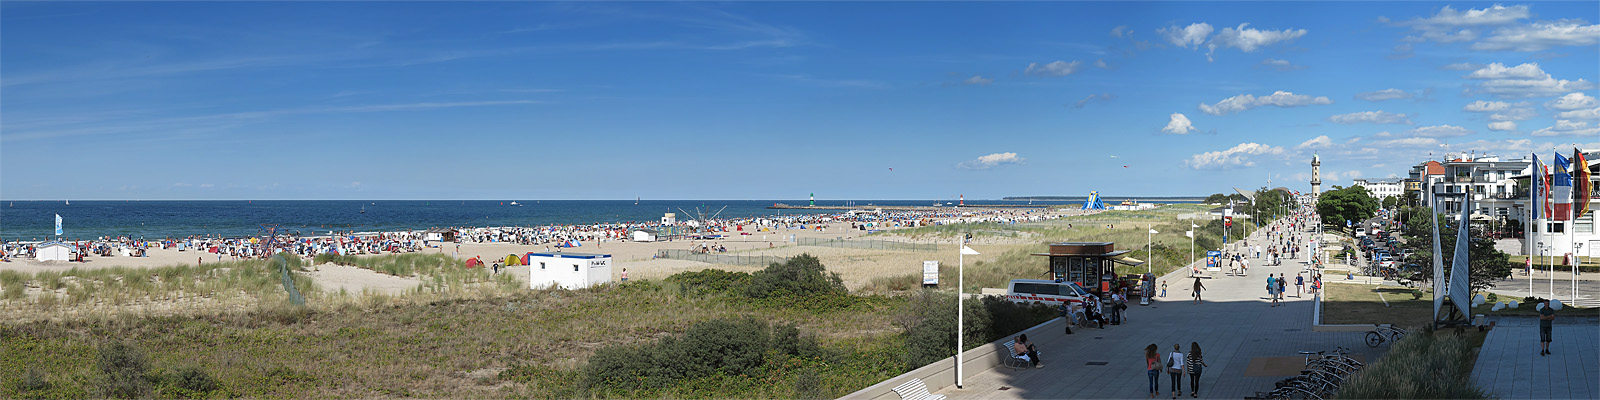 Panorama: Warnemünde Promenade - Motivnummer: hro-war-05